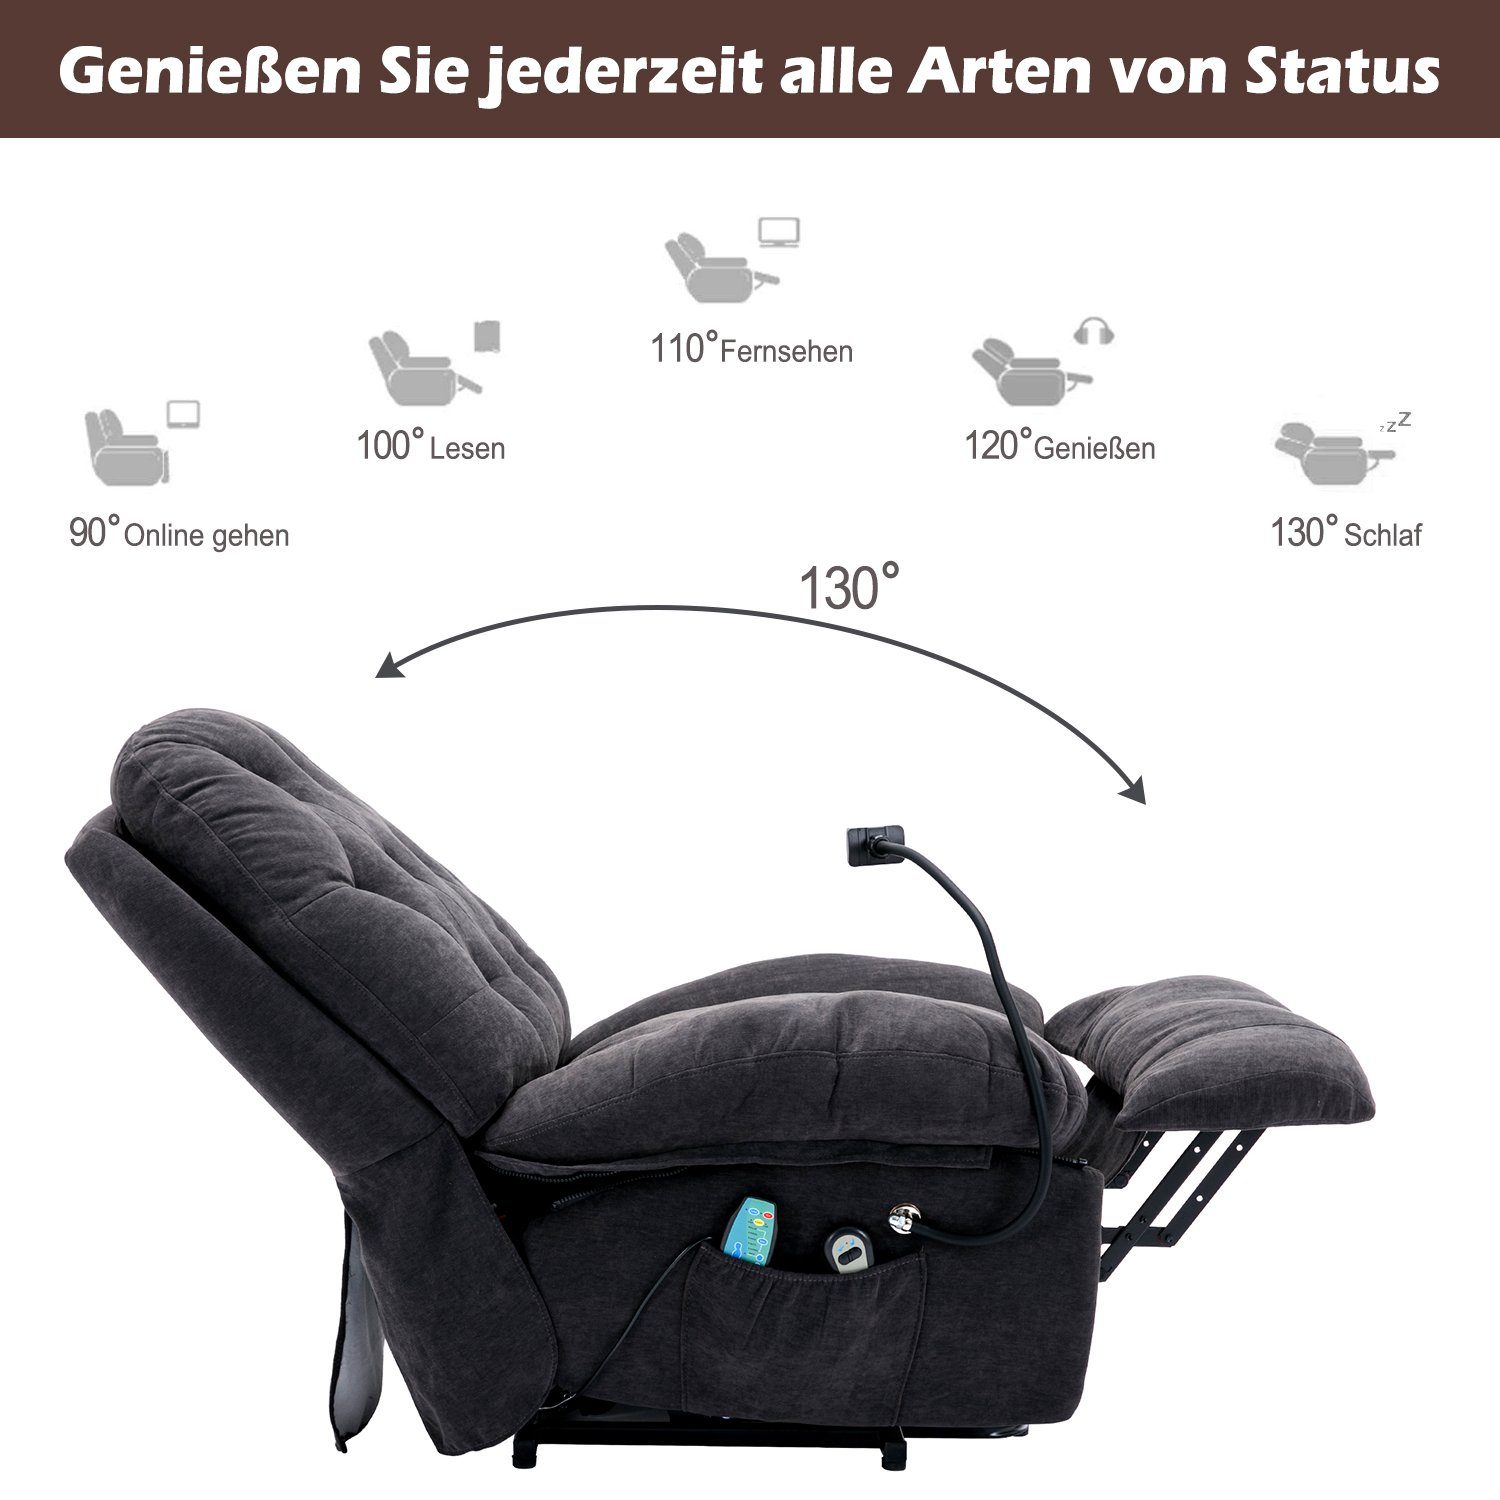 Odikalo Massagesessel Loungesitz Sessel gepolstert Liegestuhl Blau/Weiss/Grau Massagestuhl